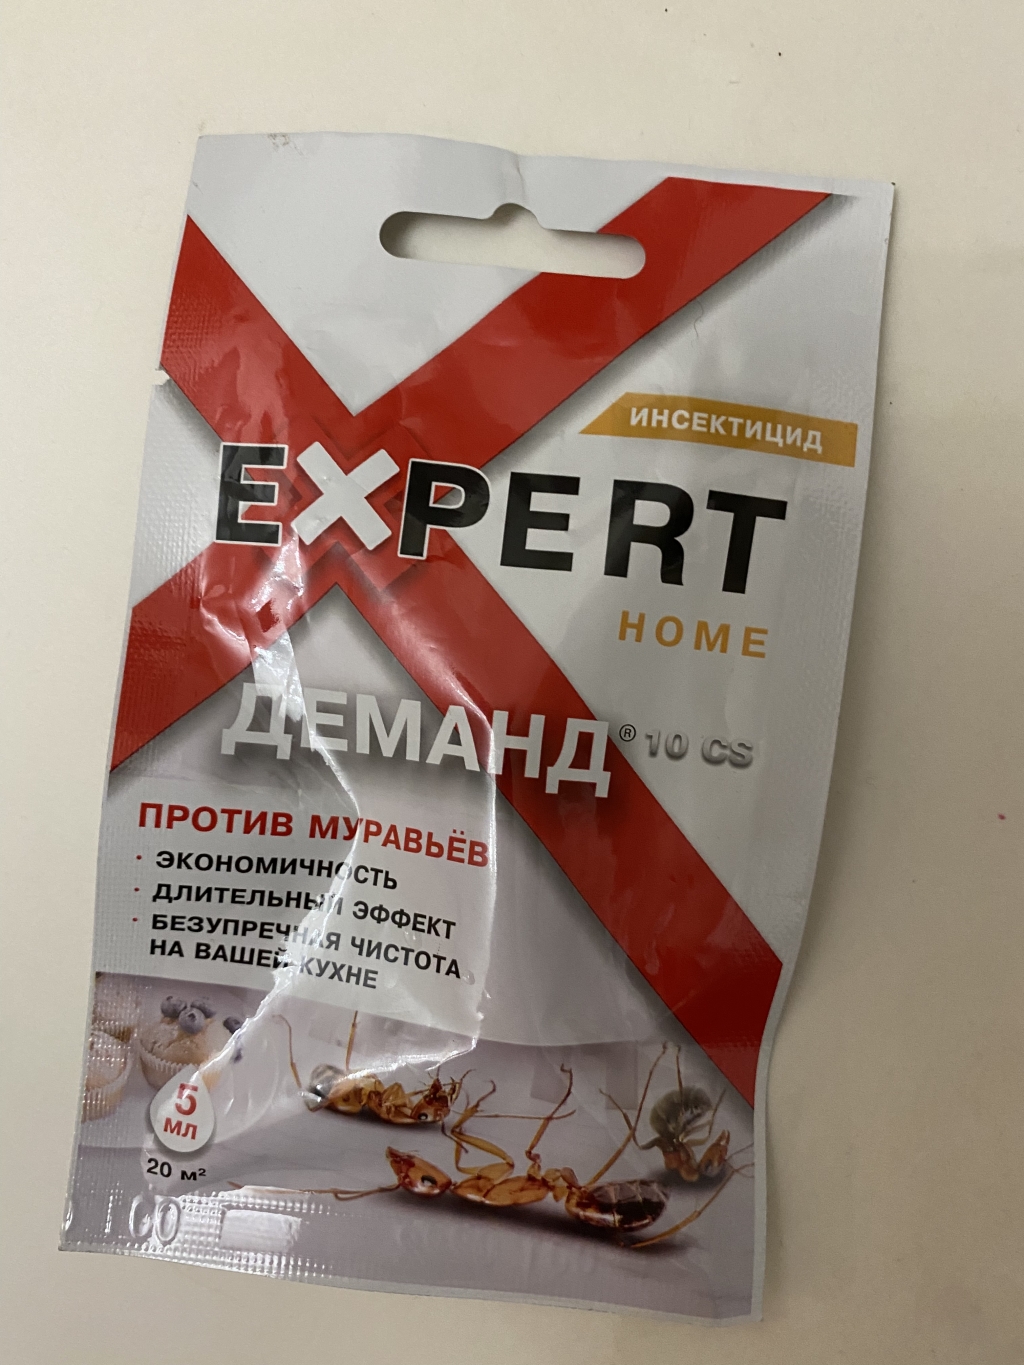 Деманд Expert Home - Хороший препарат для уничтожения муравьев